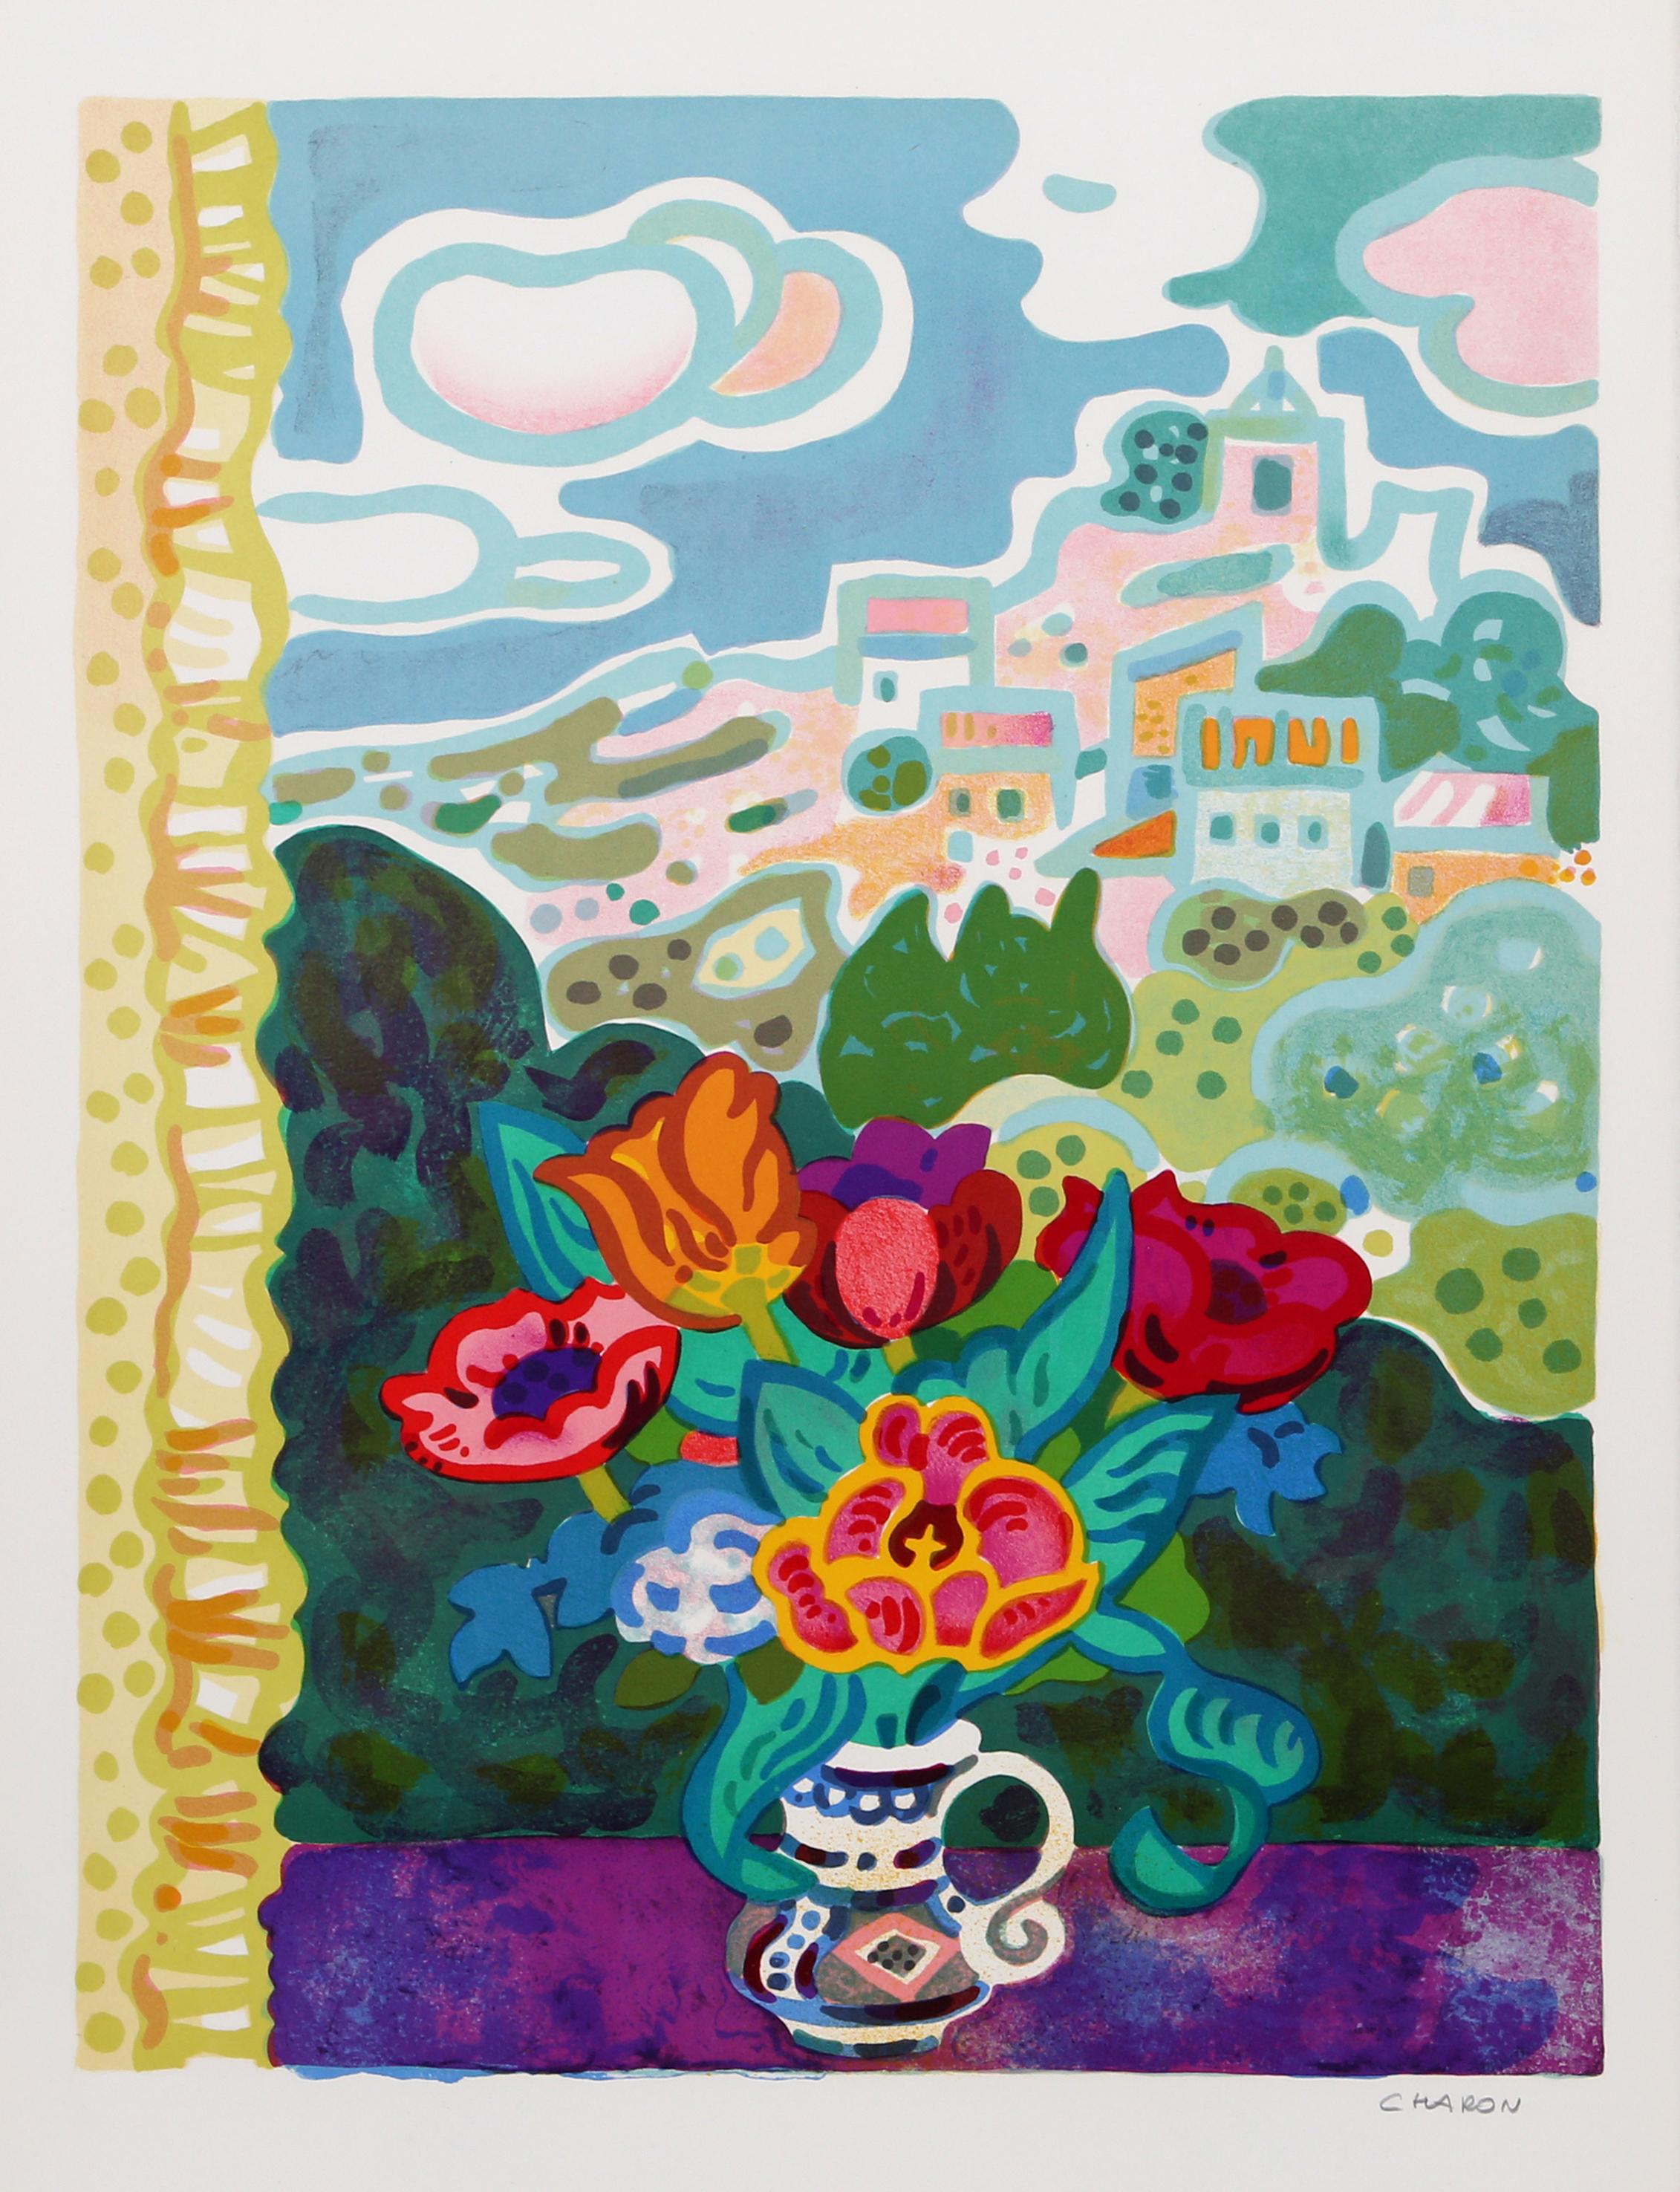 Blumen auf der Fensterbank
Guy Charon, Französisch (1927)
Datum: ca. 1977
Lithographie, mit Bleistift signiert und nummeriert
Auflage 250 Stück, EA
Bildgröße: 25,5 x 19,5 Zoll
Größe: 30 x 22 Zoll (76,2 x 55,88 cm)